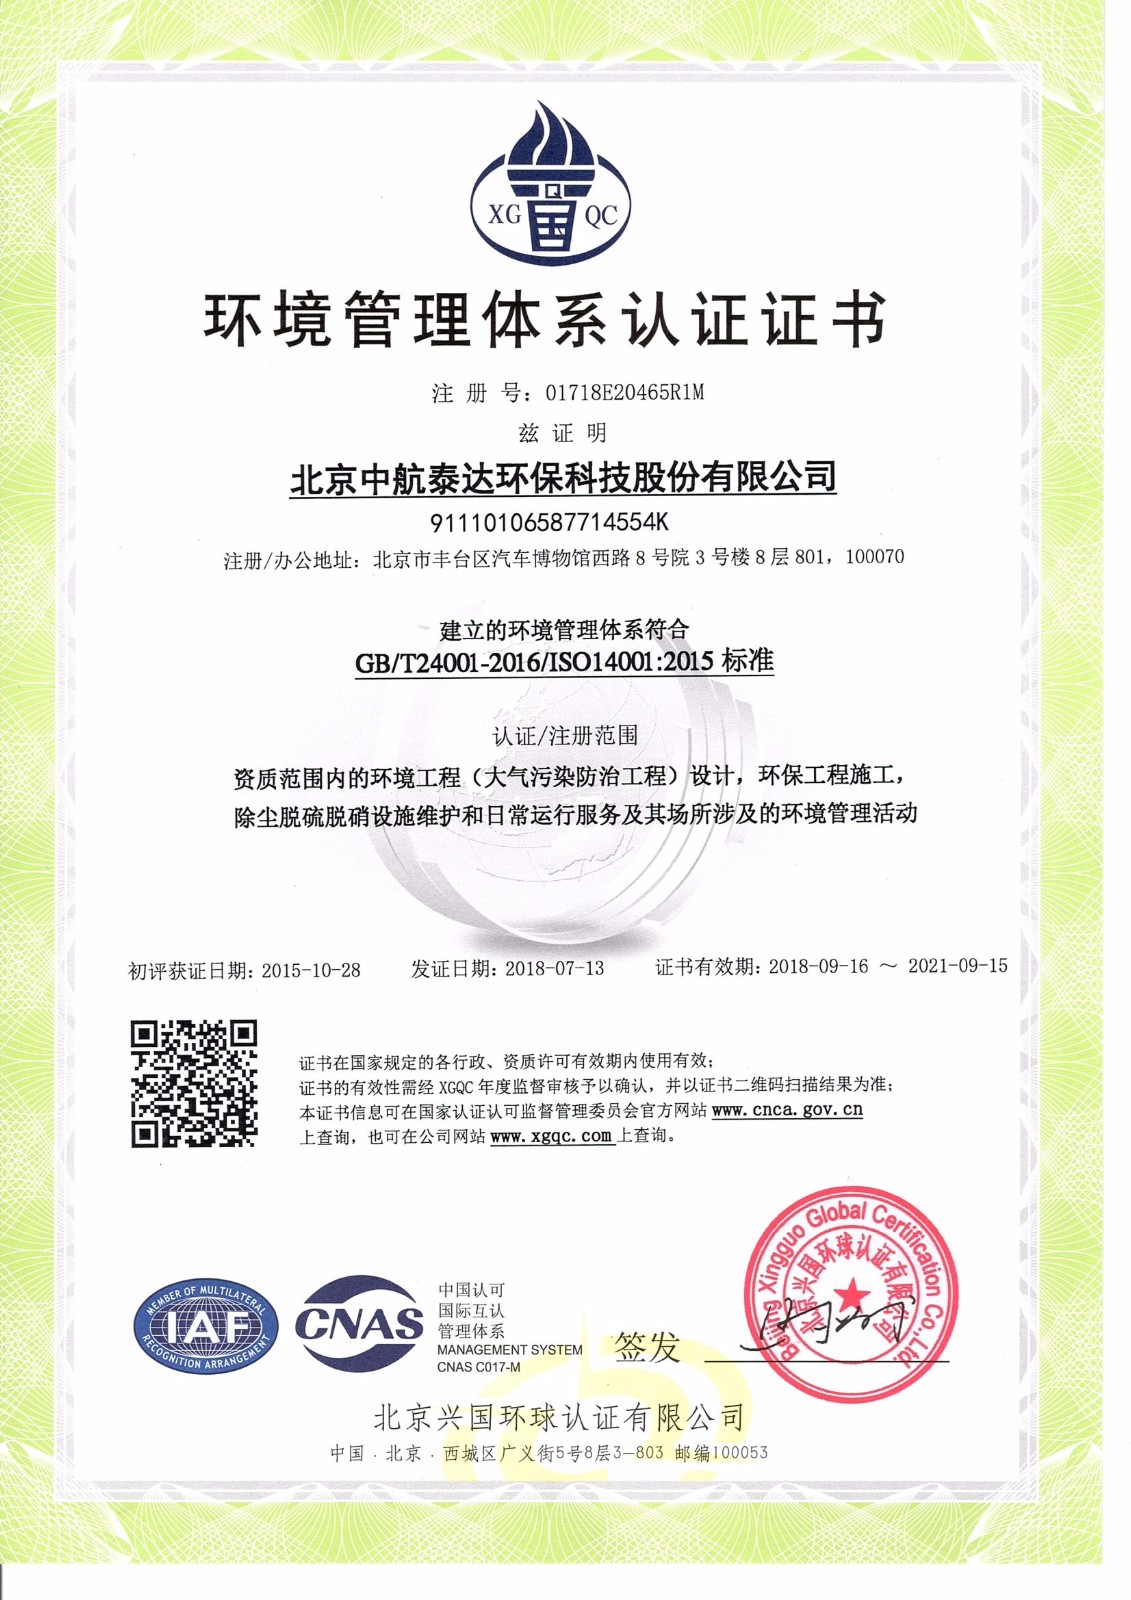 环境管理体系认证证书-中文.jpg